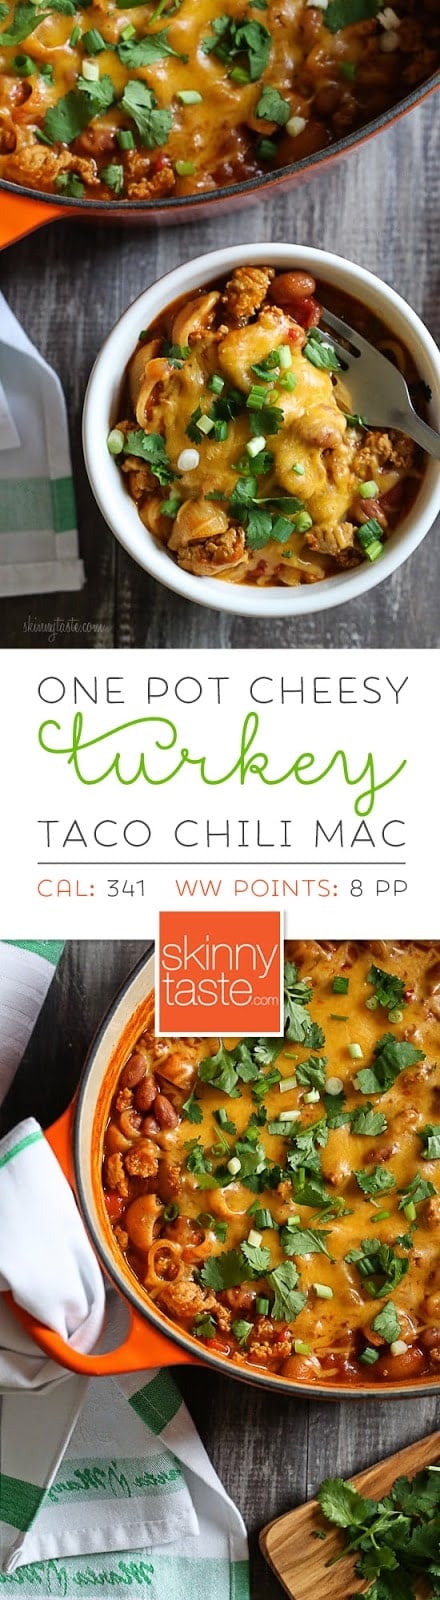 One Pot Cheesy Turkey Taco Chili Mac Skinnytaste